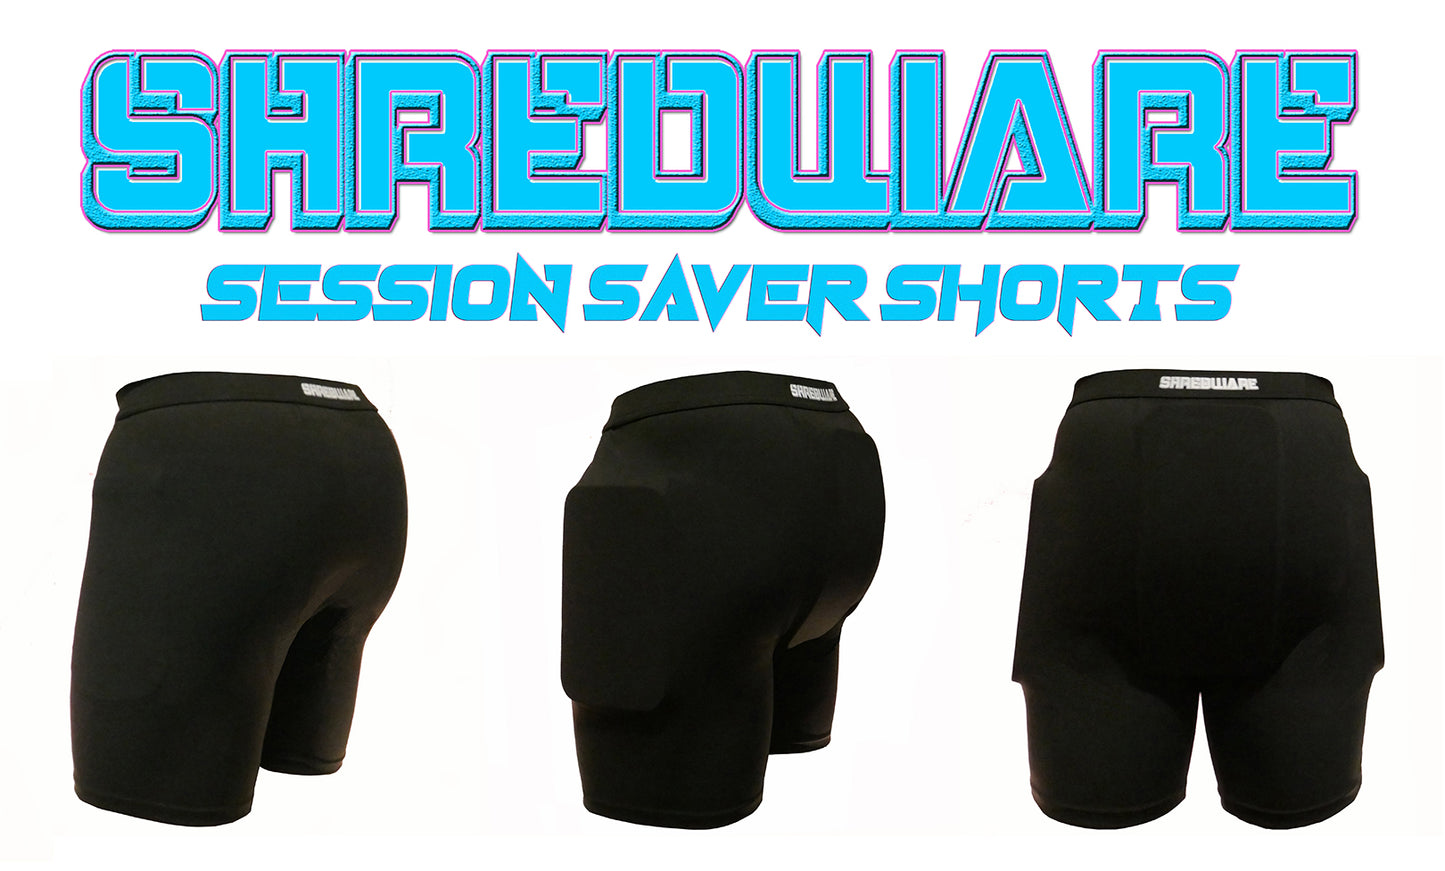 Men's Session Saver Shorts